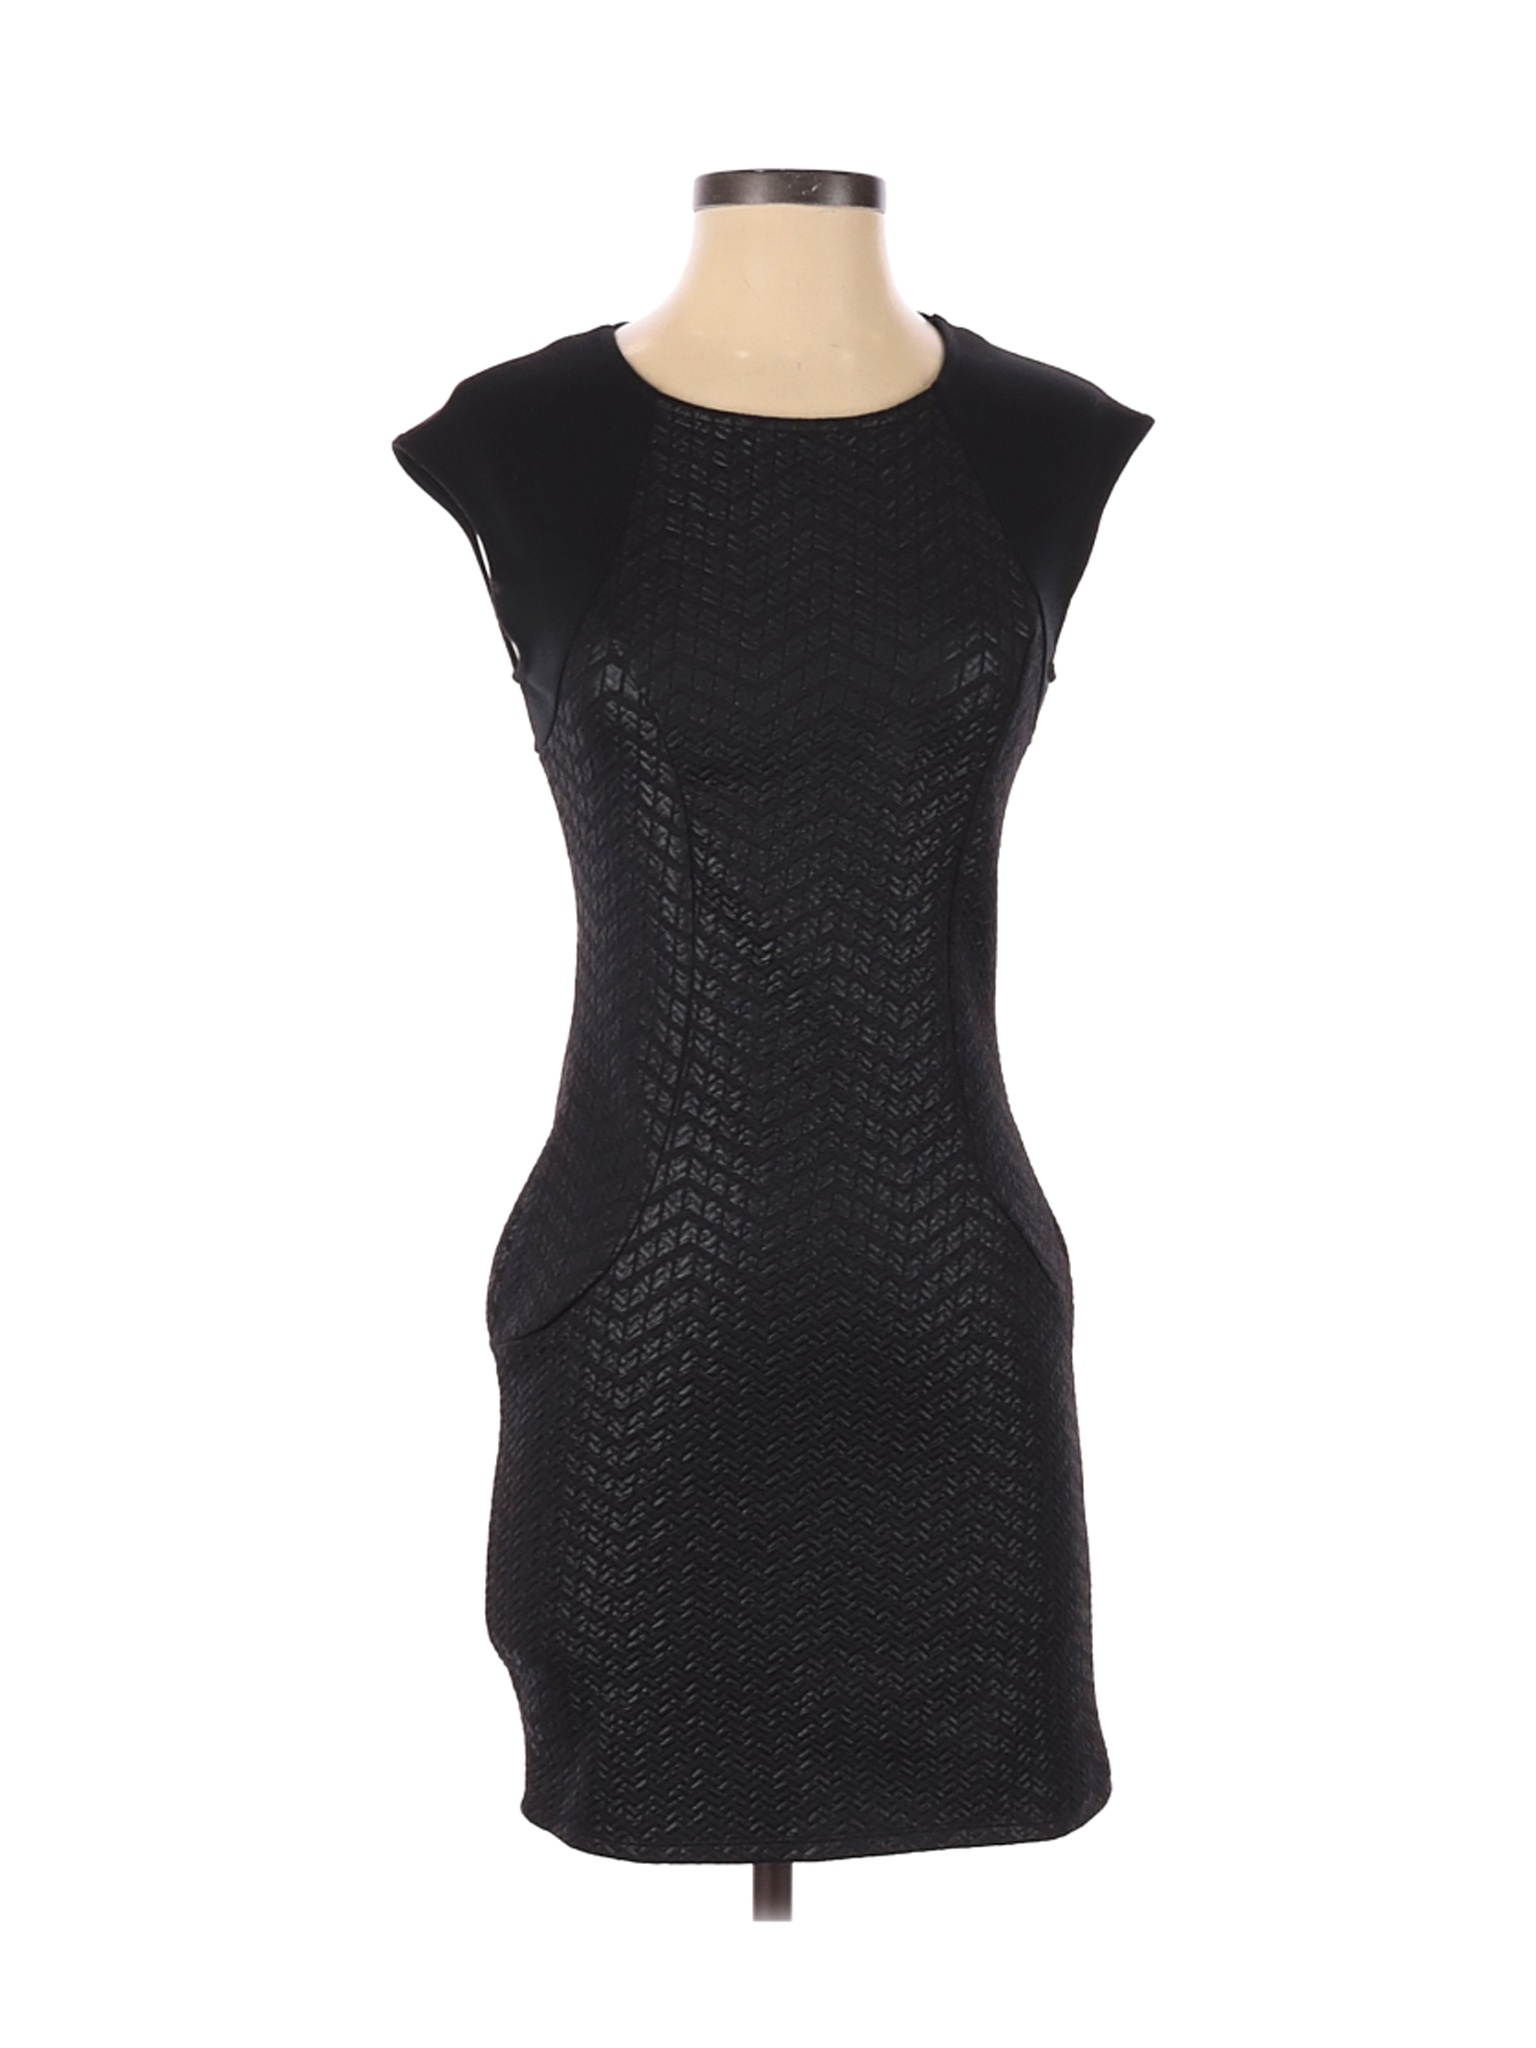 Monteau Women Black Casual Dress S | eBay